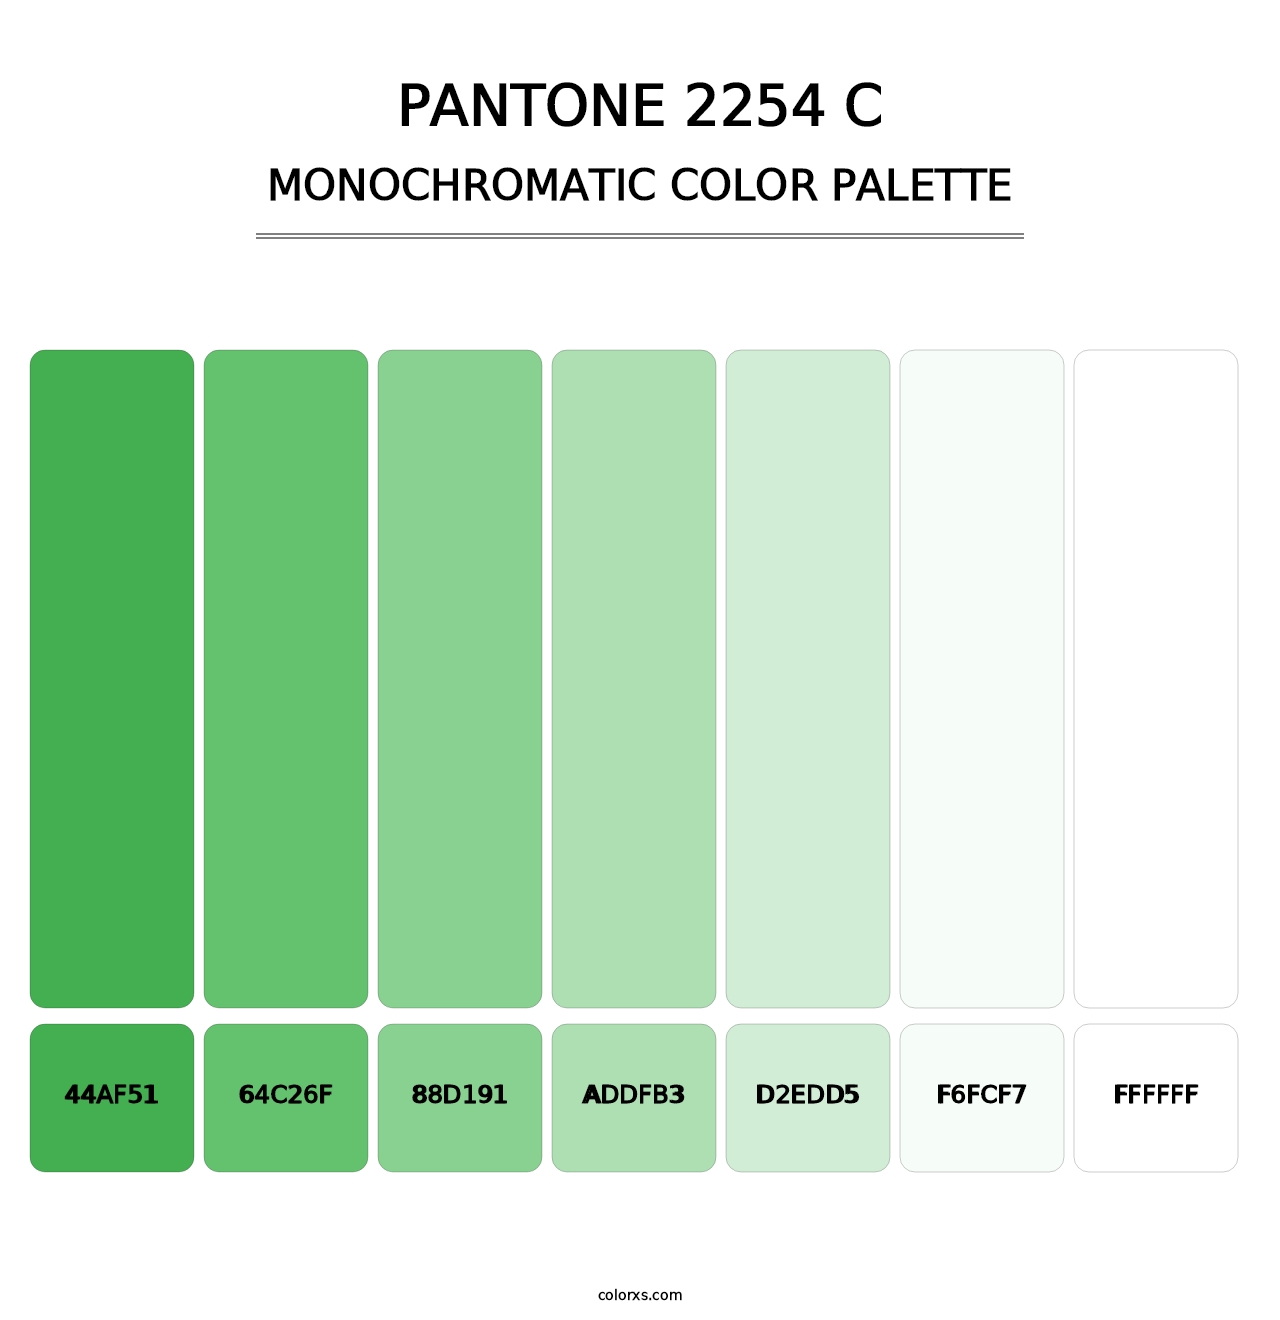 PANTONE 2254 C - Monochromatic Color Palette